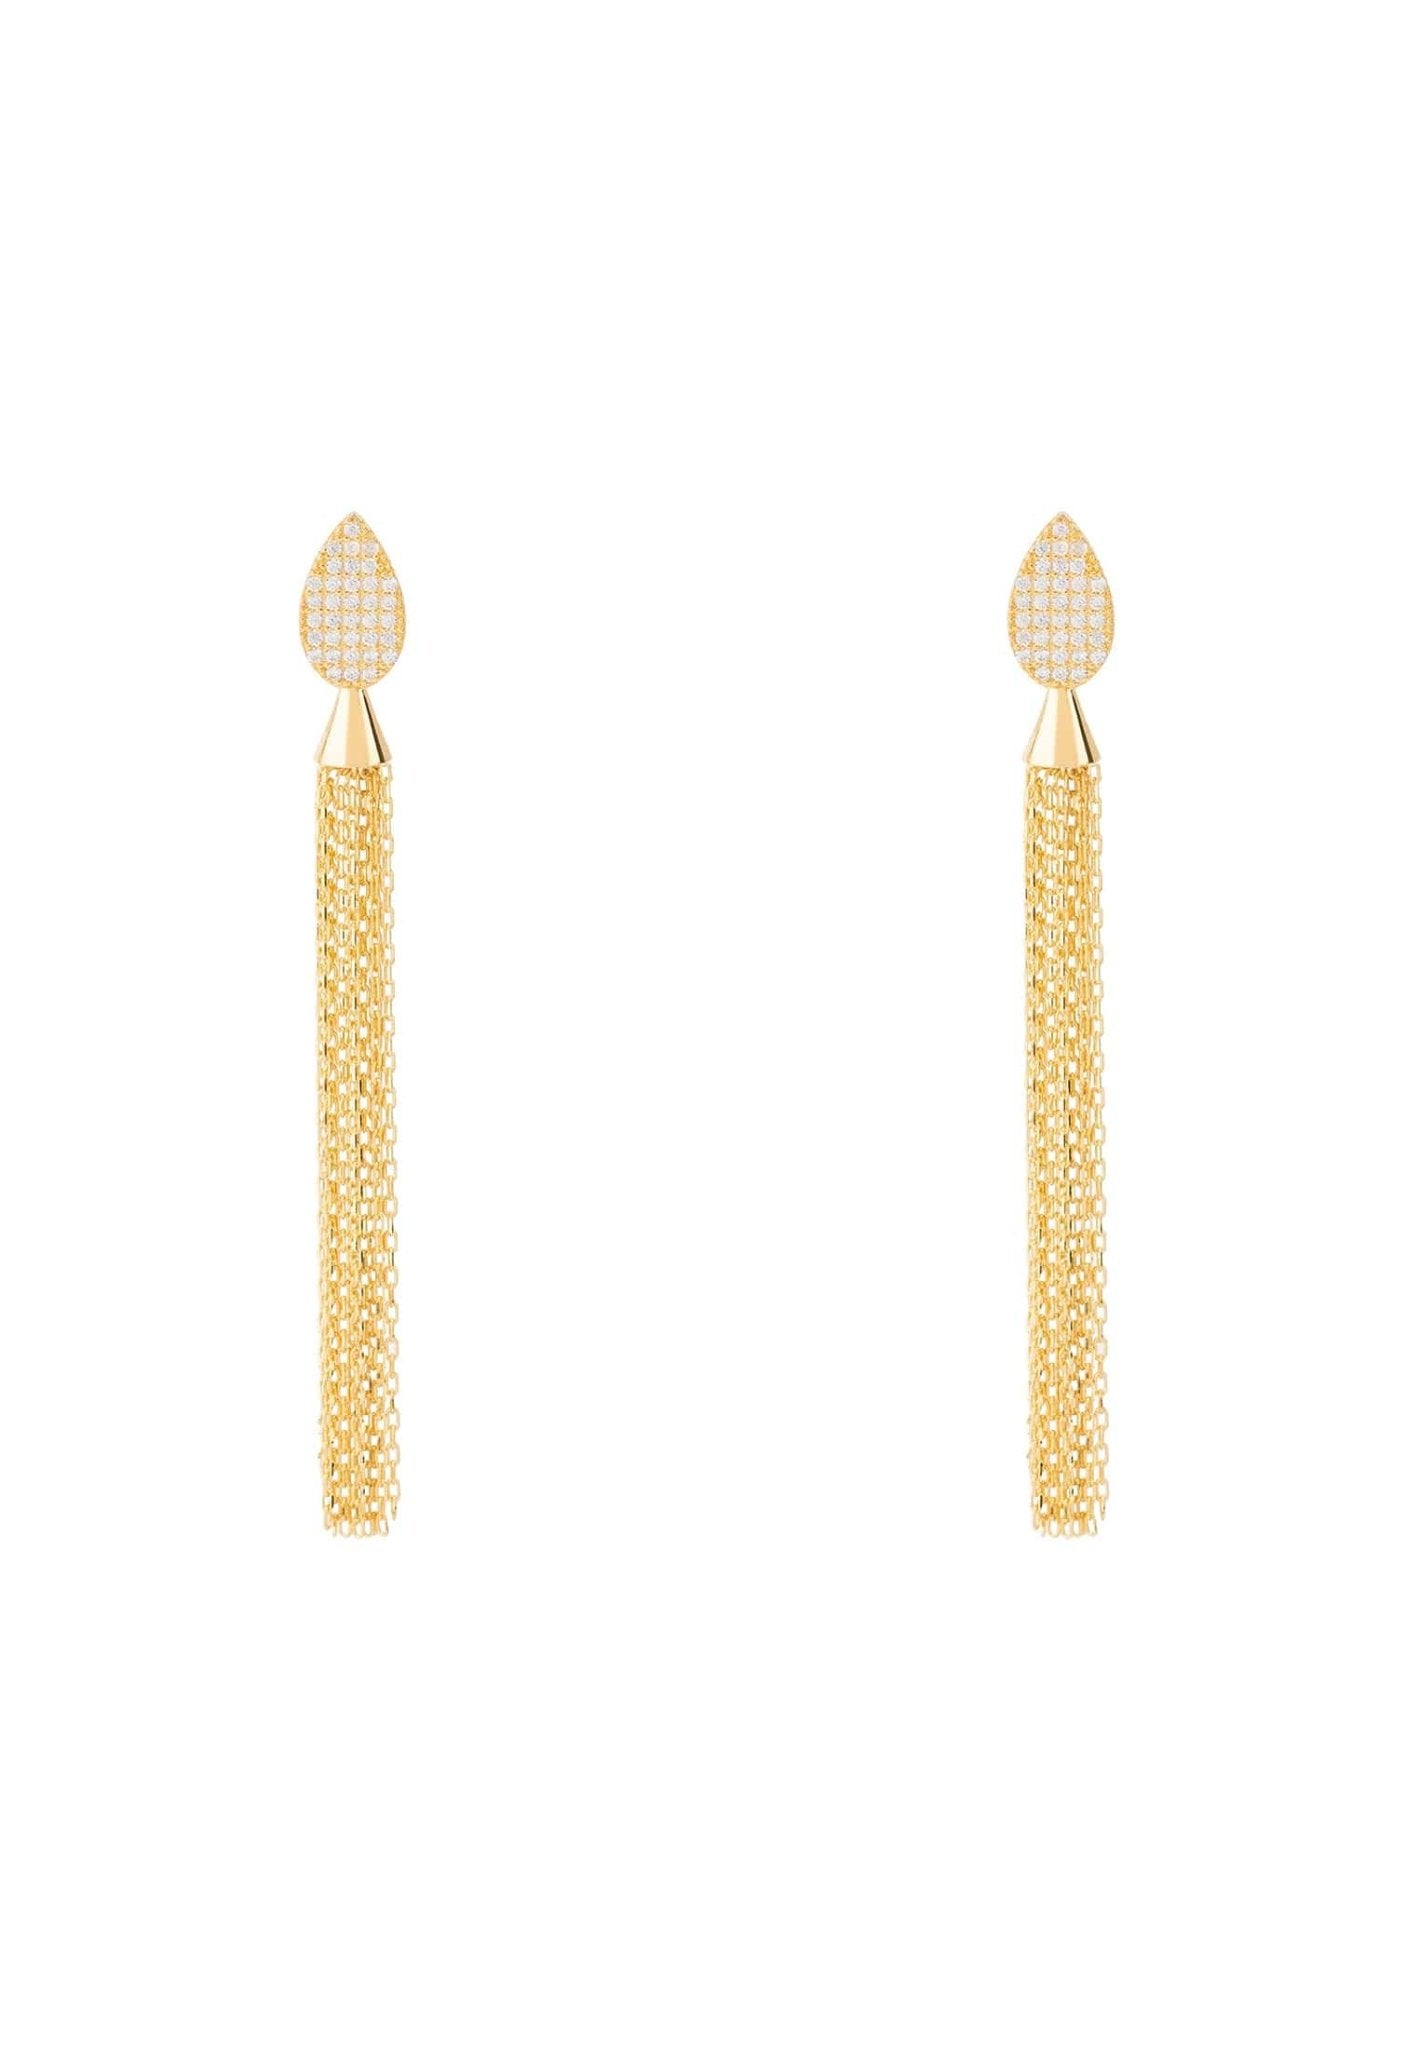 Tassel Chain Earrings Cz Gold - LATELITA Earrings